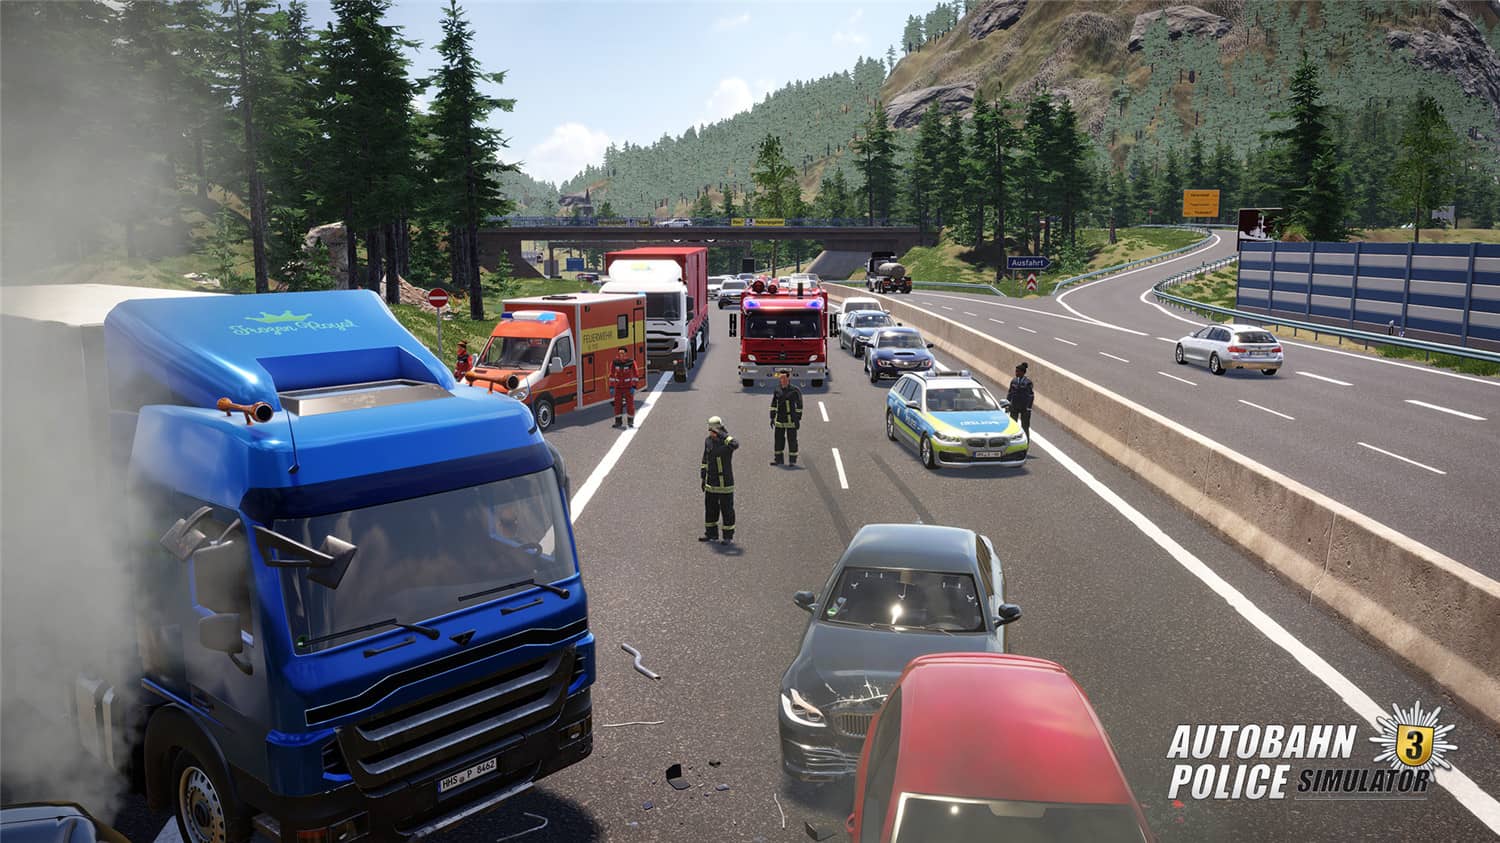 高速公路警察模拟3/Autobahn Police Simulator 3插图5